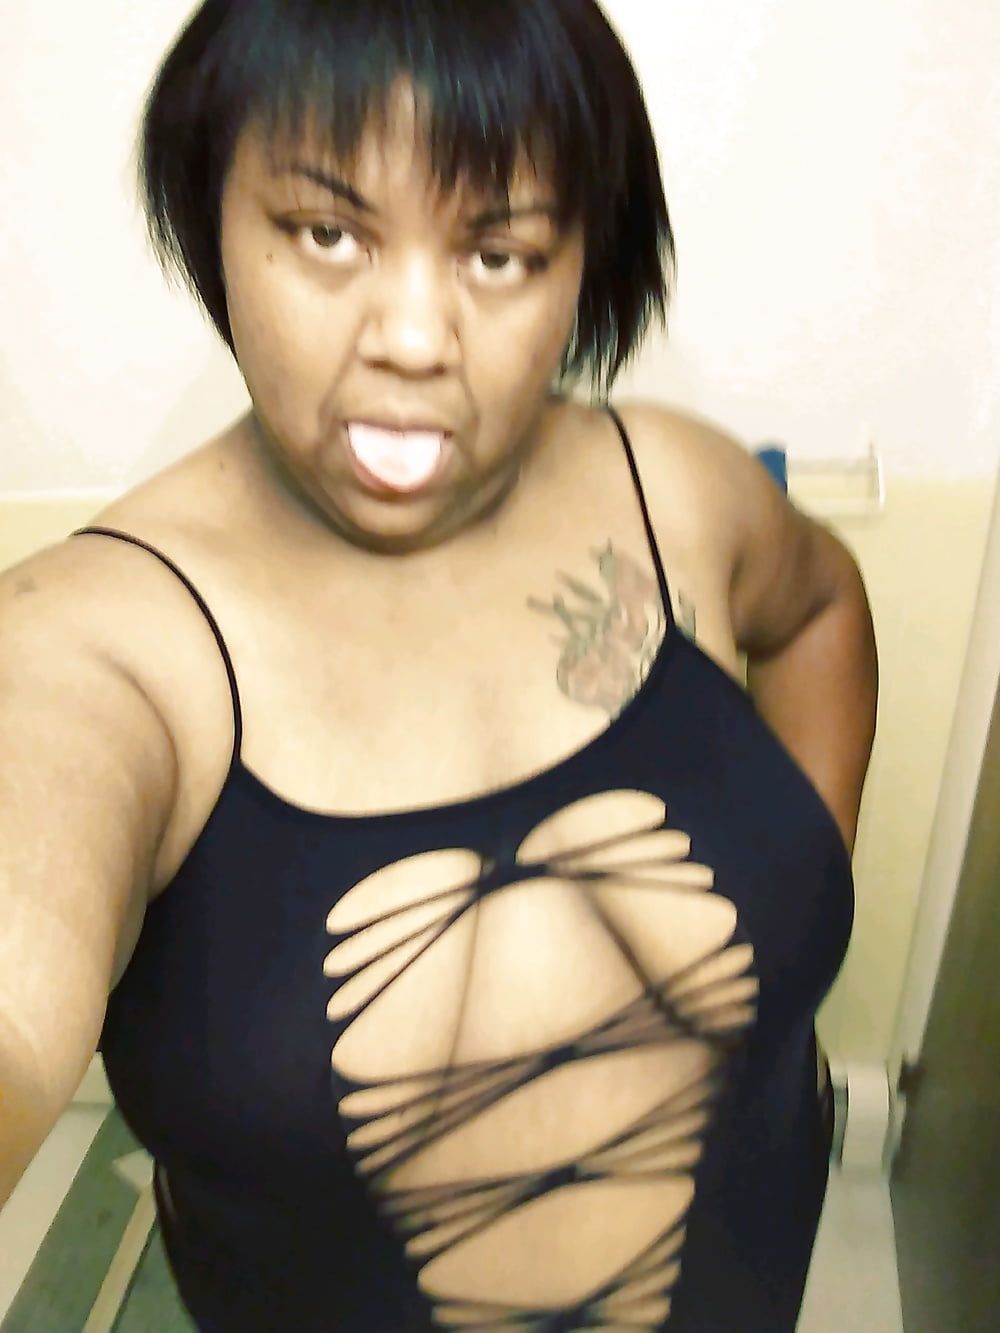 I'm Big Titty Tiara Danielle Cox Detroit MI #15